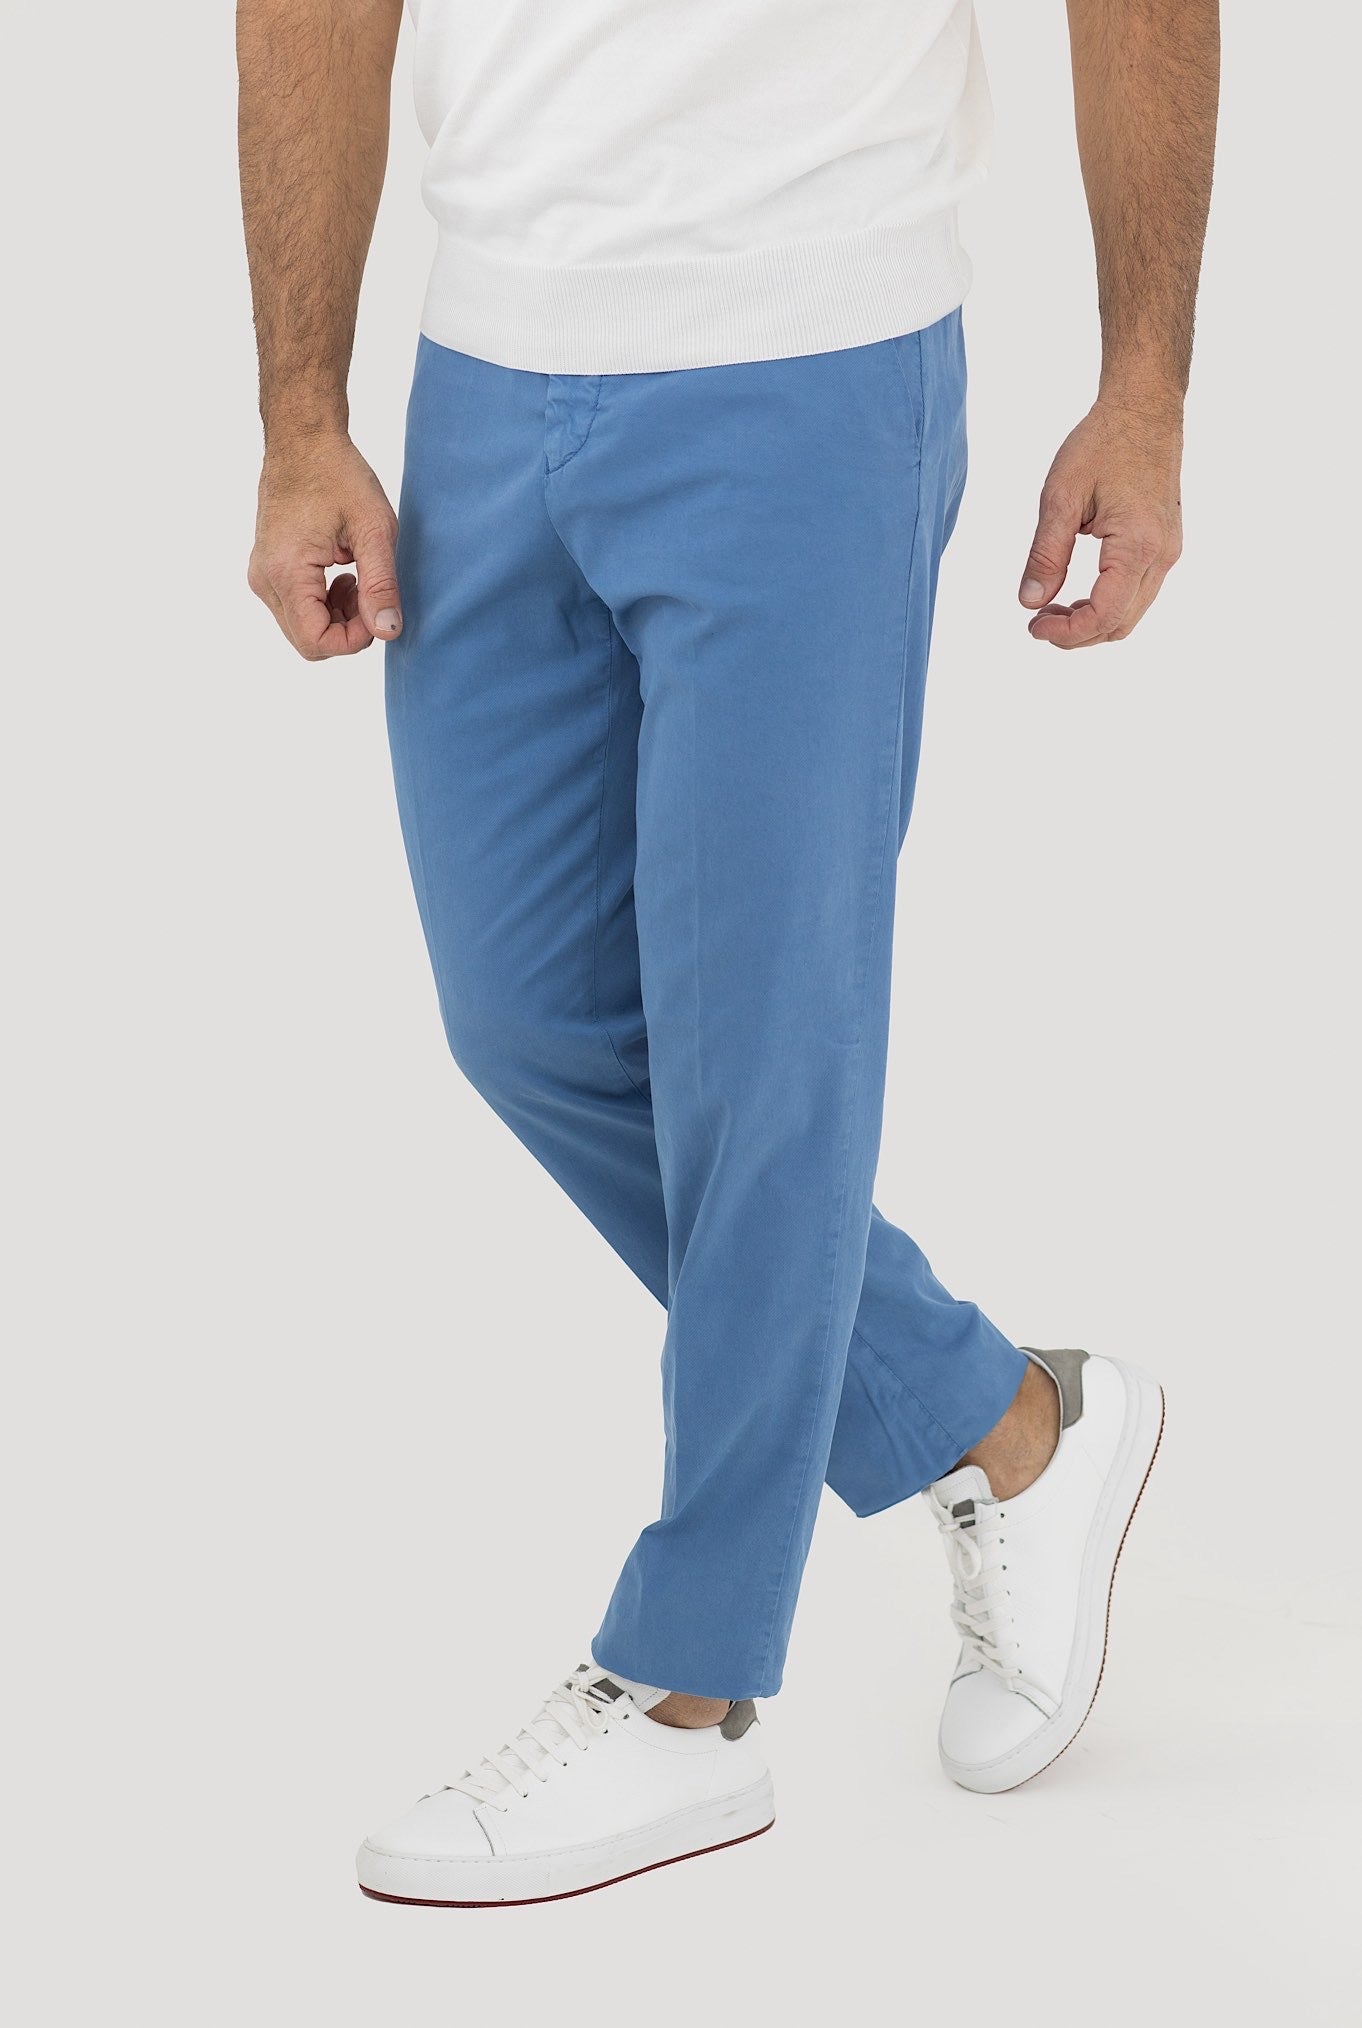 MARCO PESCAROLO Trousers mod. Evo Azzurro